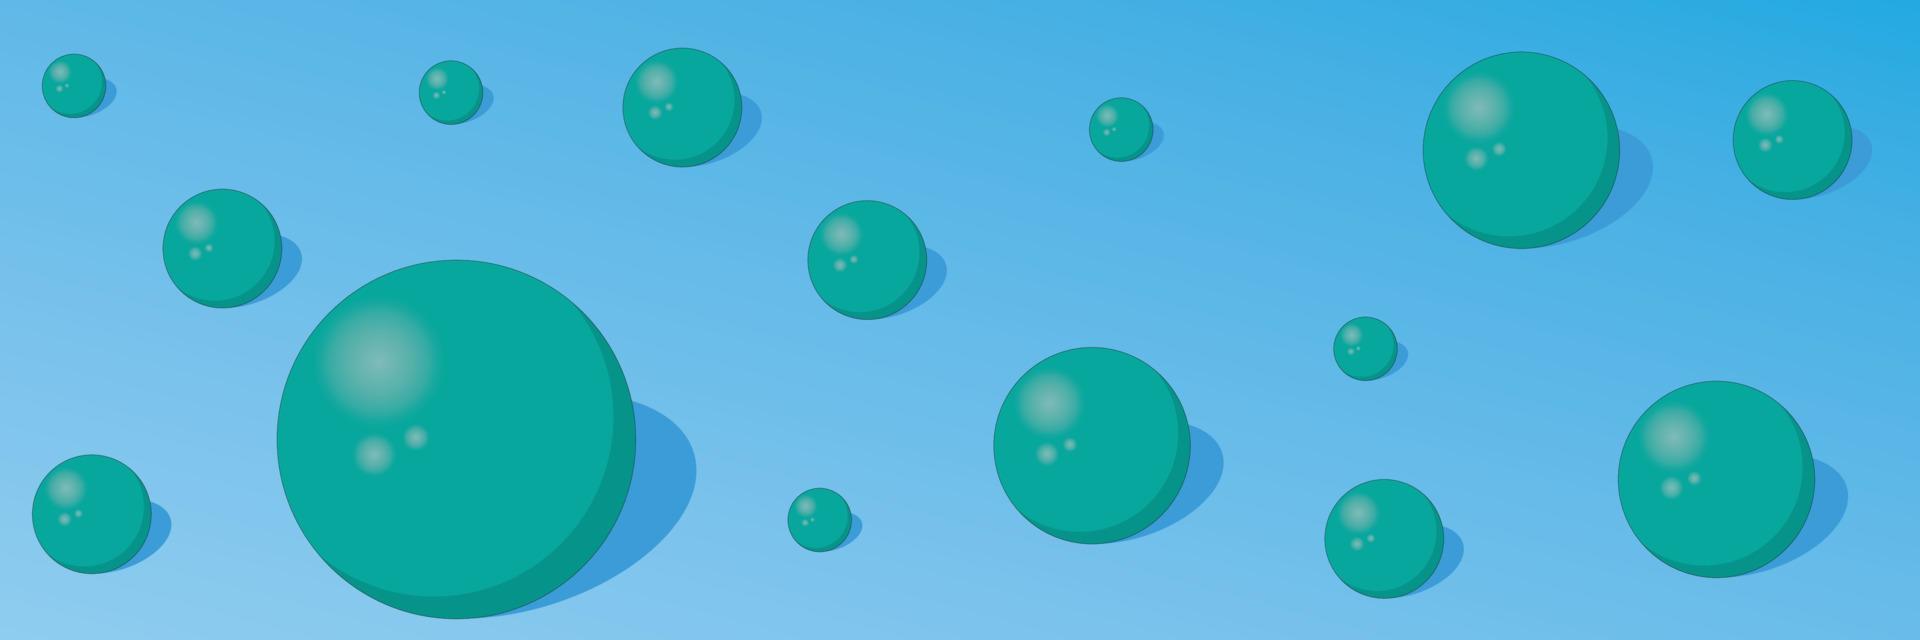 abstrakt bakgrund med turkosa bollar på blå färg bakgrund vektorillustration vektor